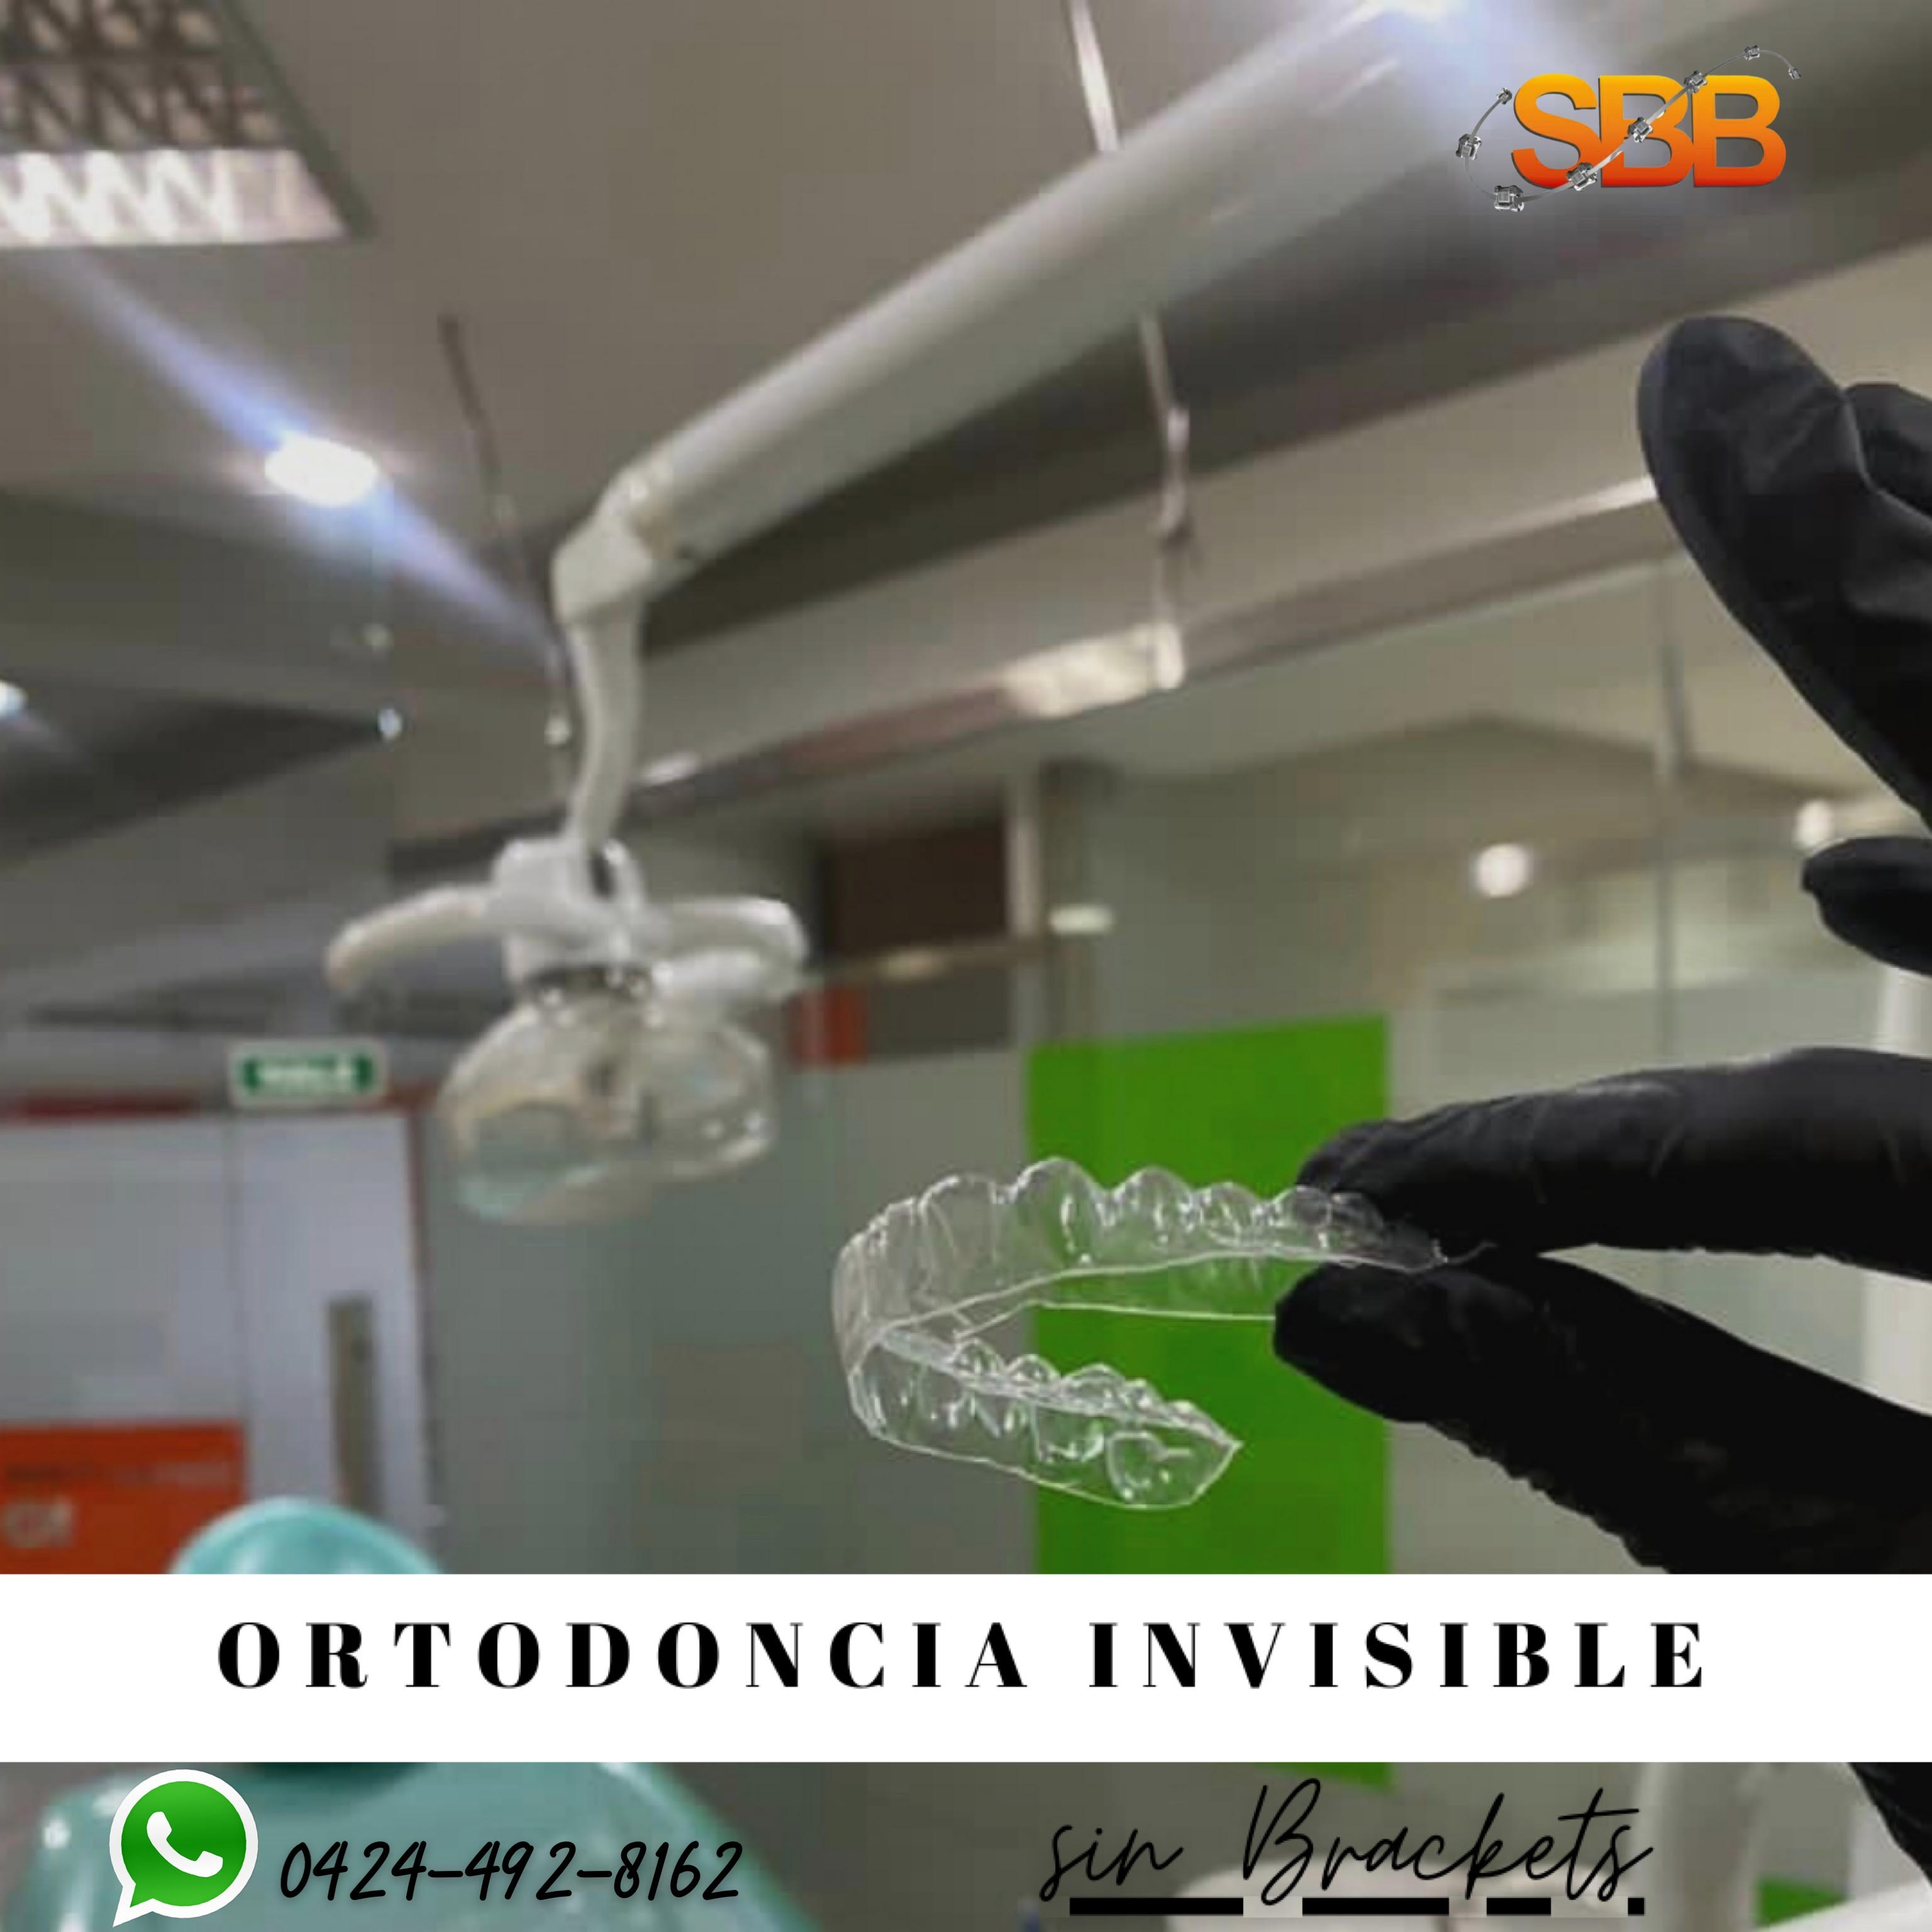 ALINEADORES INVISIBLES, *Ortodoncia Invisible*